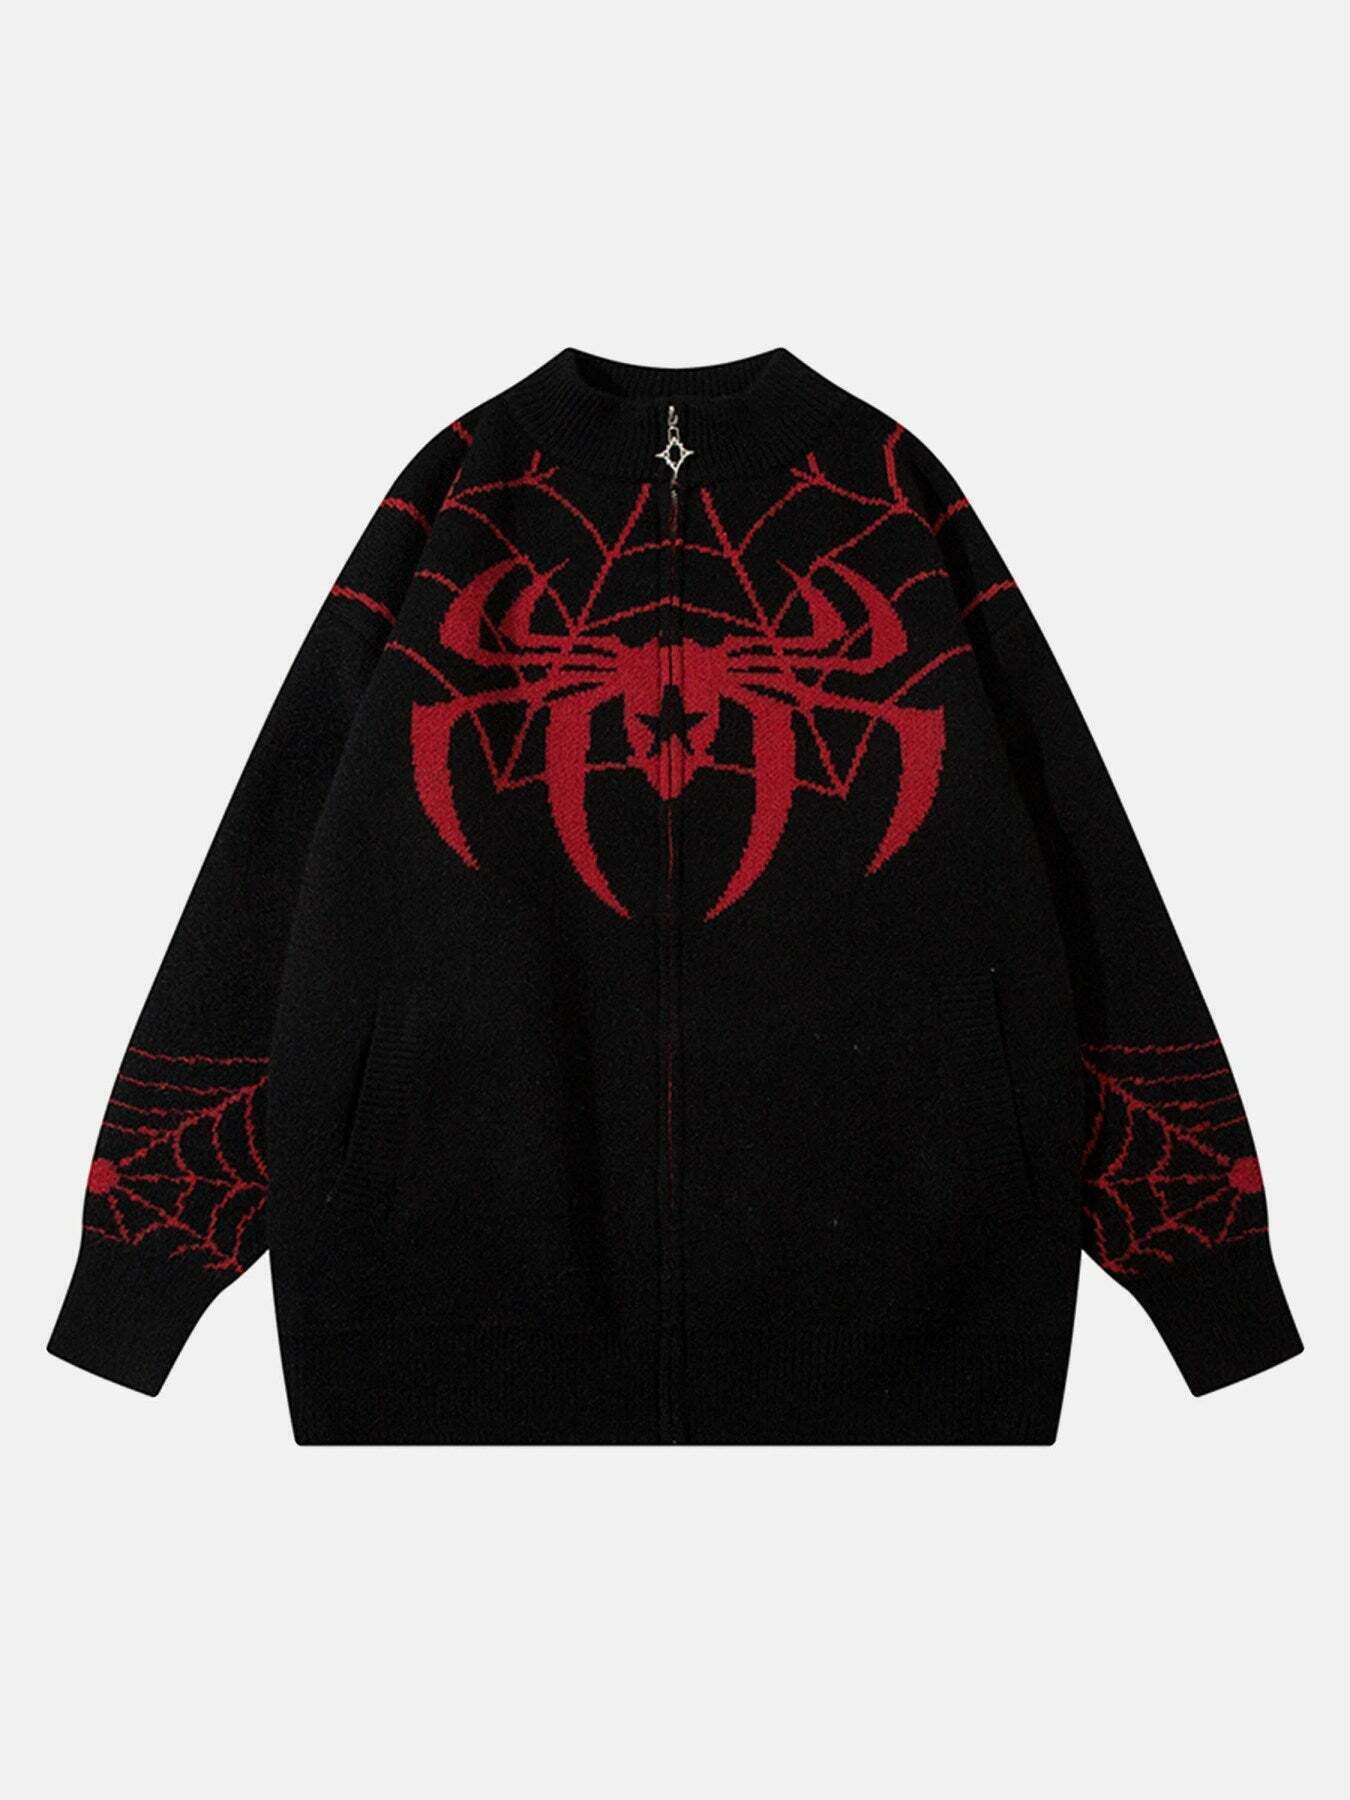 Gen Z K-POP Streetwear: Spider Print Loose Sweater Coat for Y2K Style